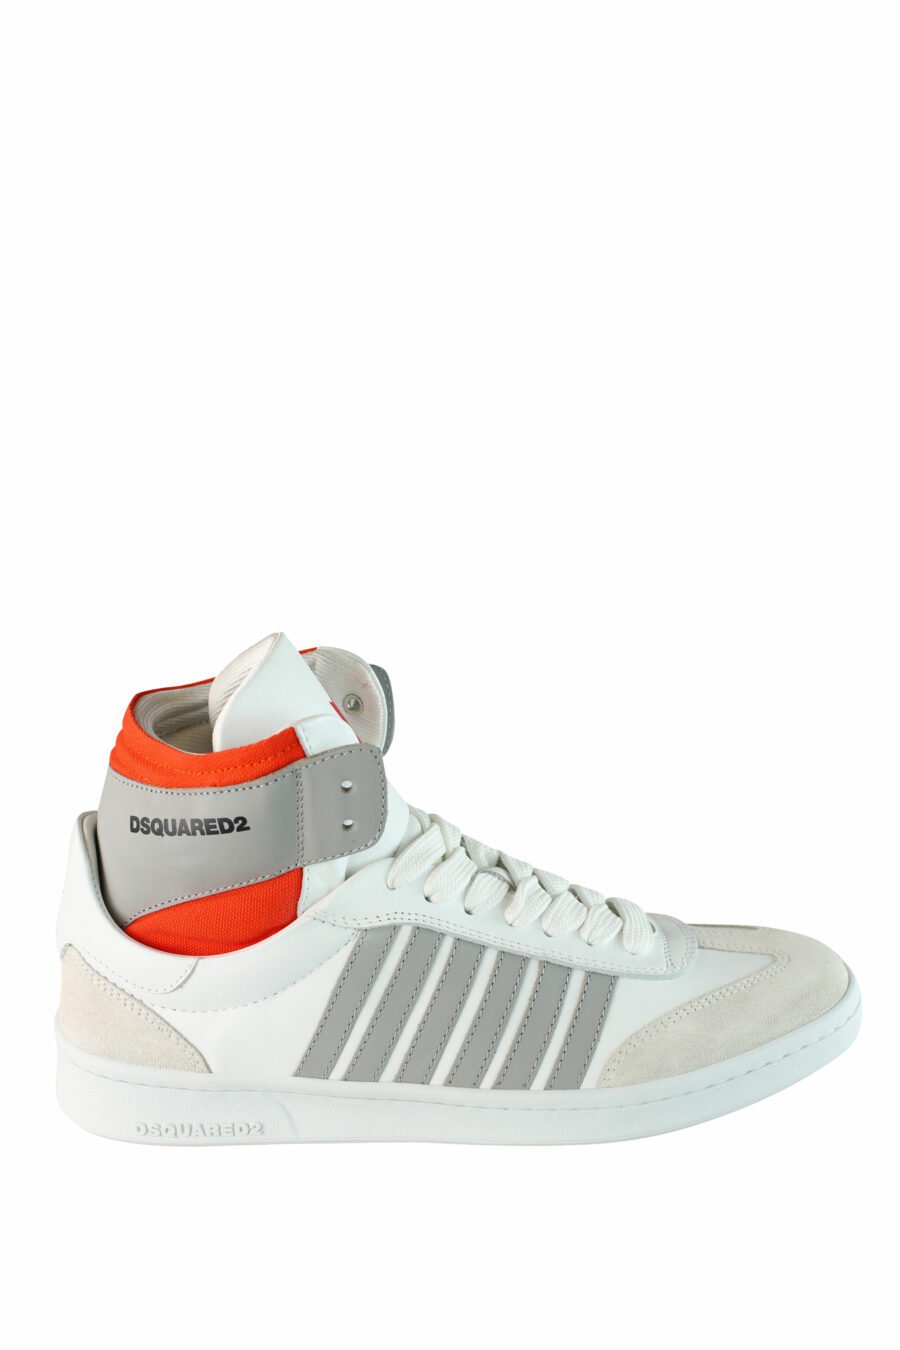 Baskets "boxer" mixtes blanches avec détails orange et gris - IMG 1501